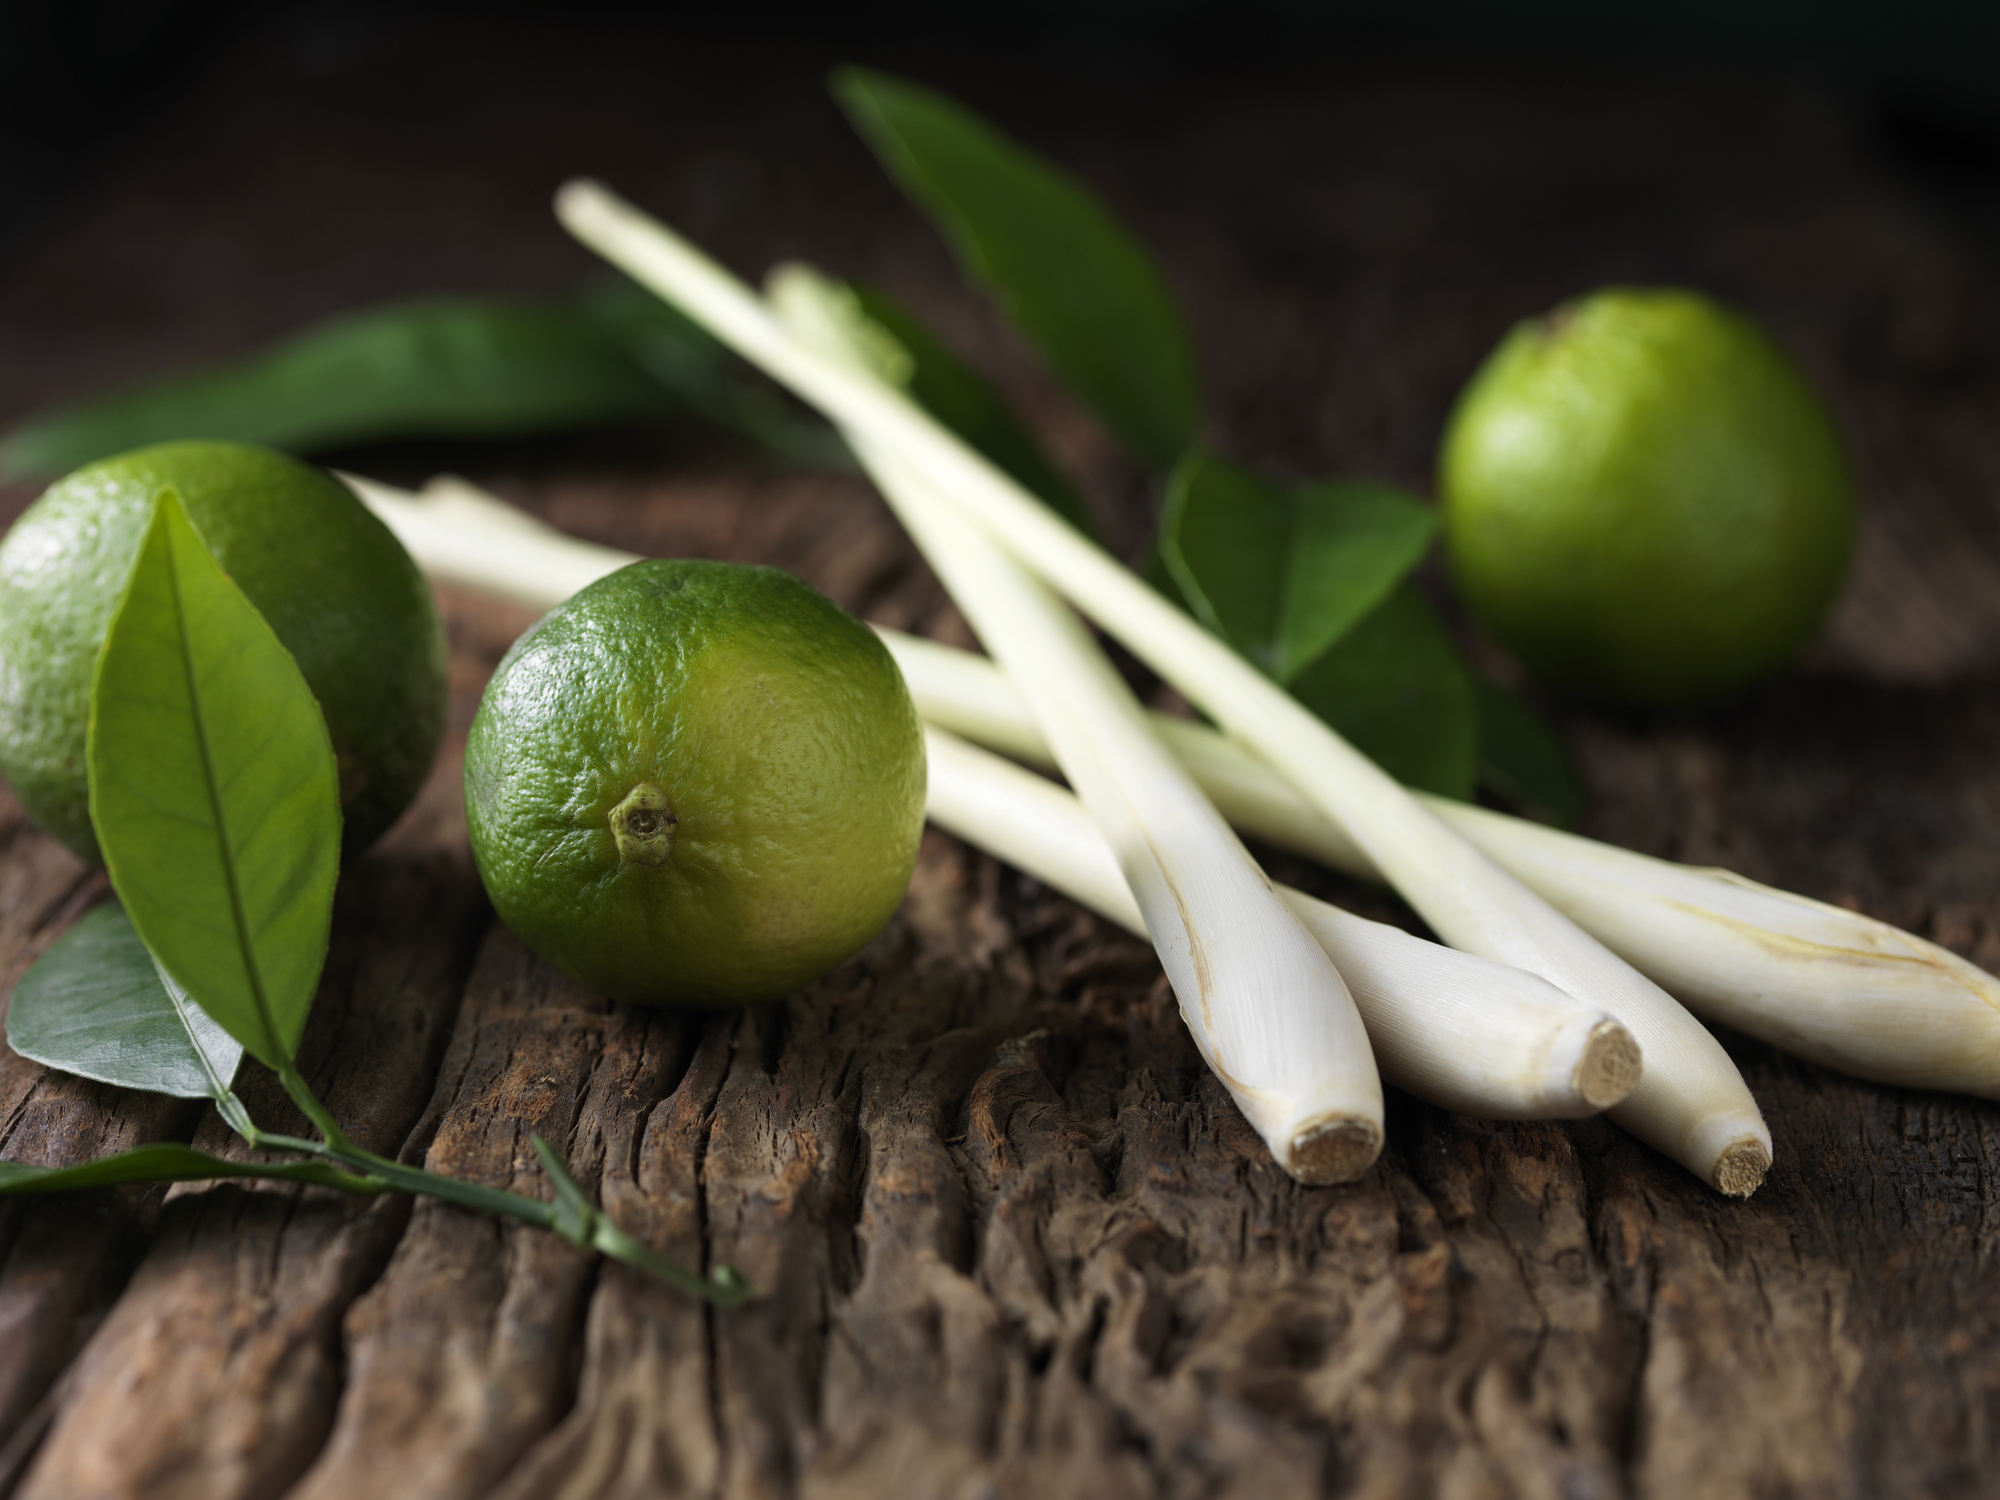 Originaria de Asia y el Pacífico Sur, se caractariza por su inconfundible fragancia a limón.